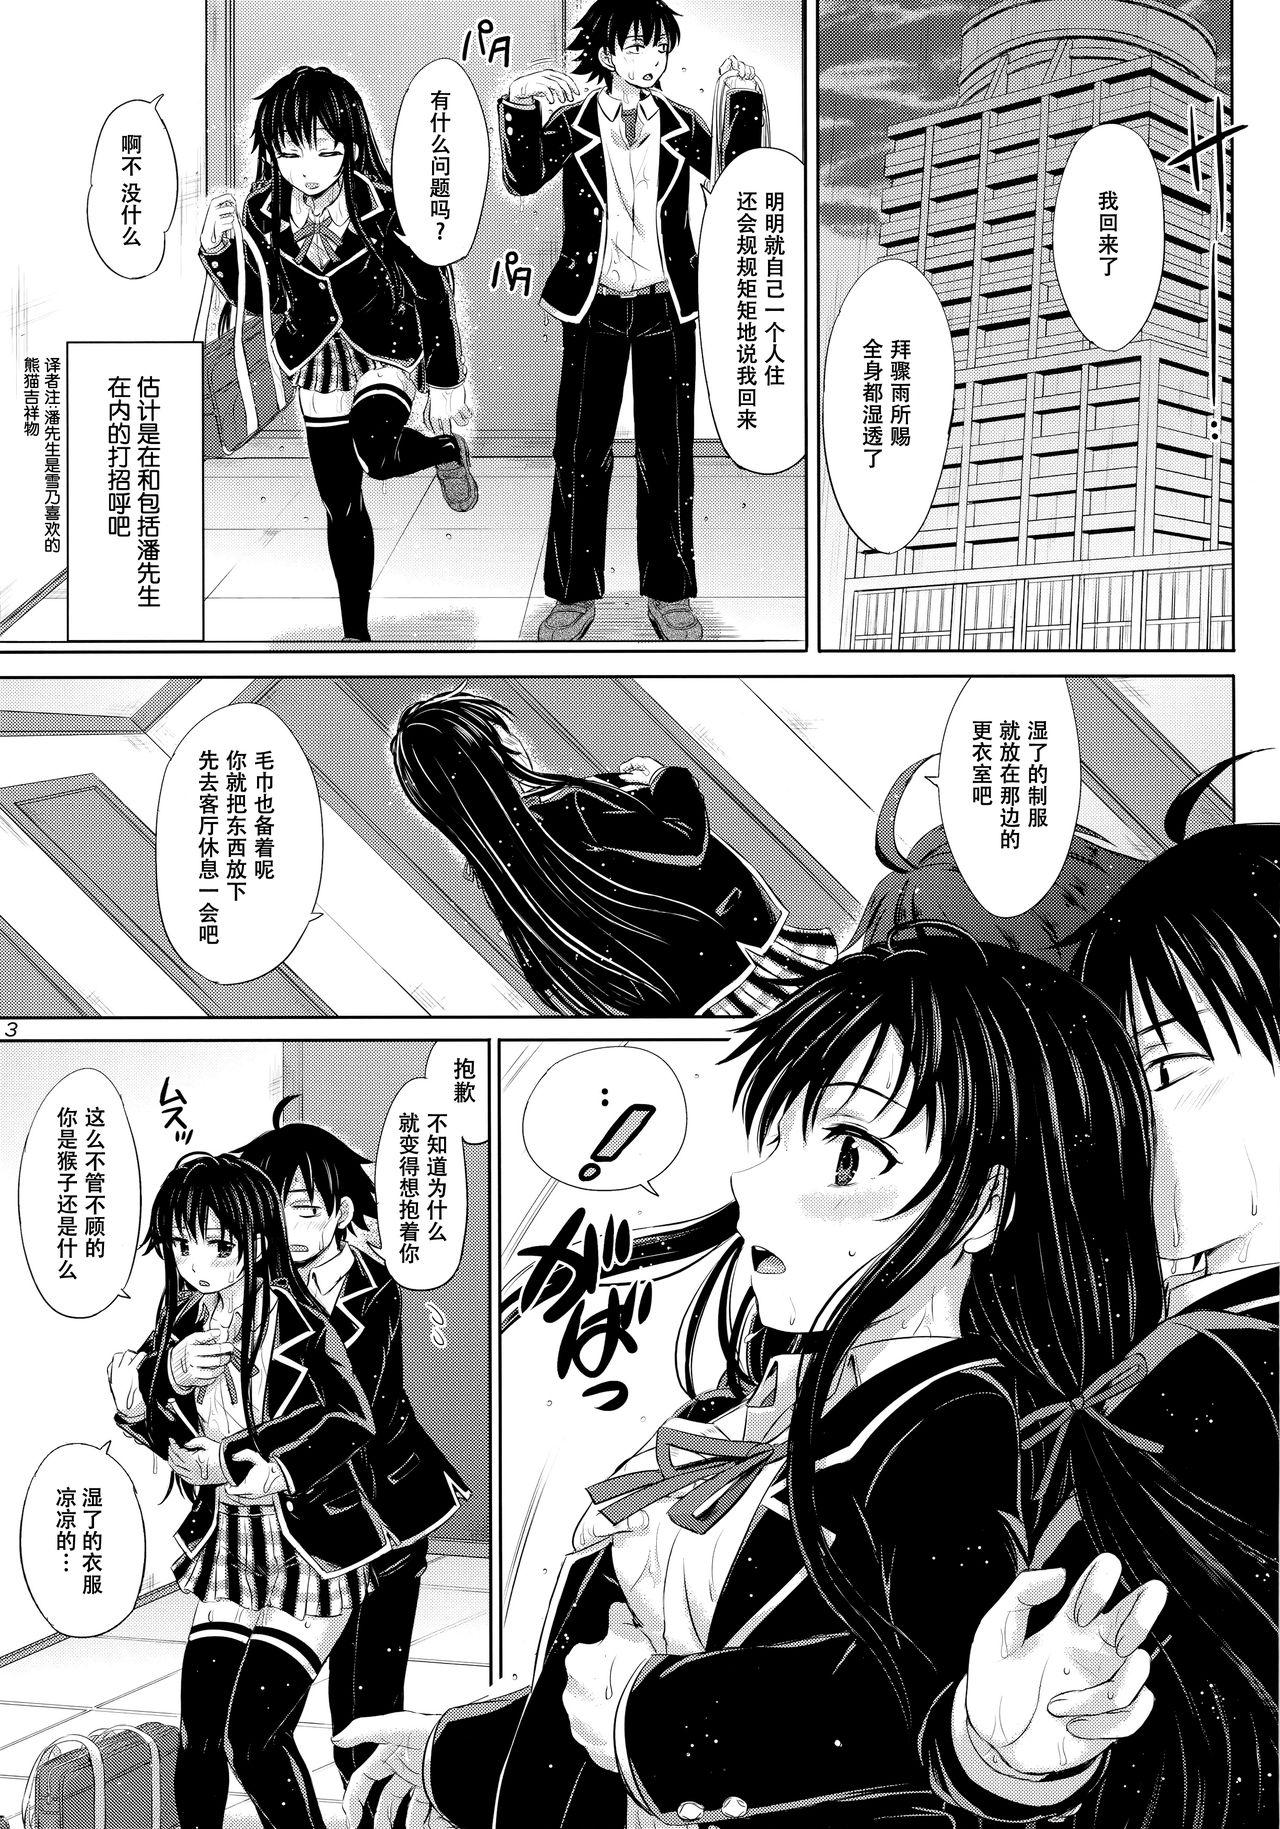 Ballbusting Sanrenkyuu wa Asa made Nama Yukinon. - Yahari ore no seishun love come wa machigatteiru Slave - Page 3